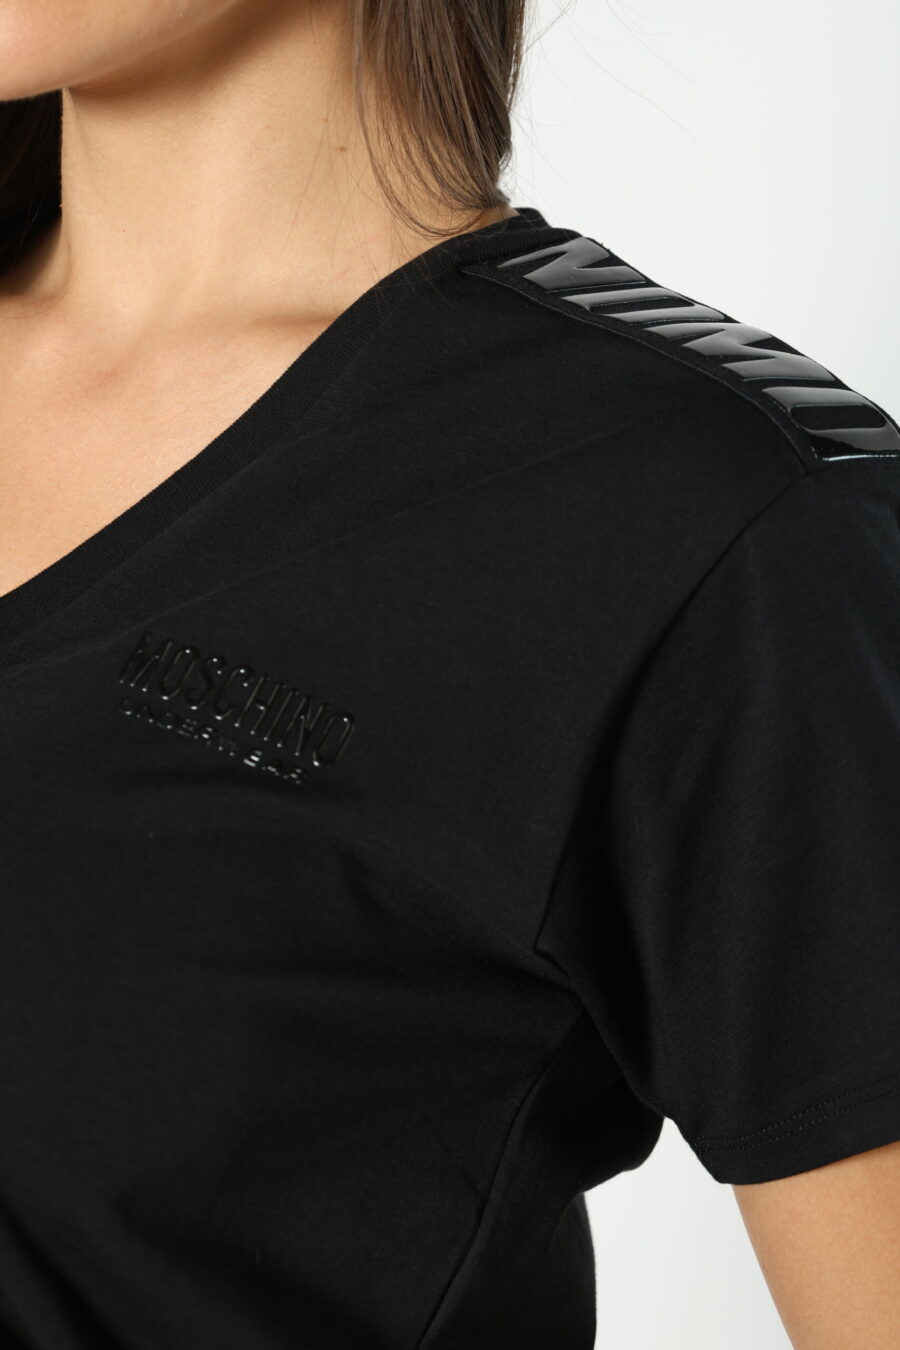 Camiseta negra con cuello en "v" y logo en cinta monocromático - 8052865435499 459 scaled